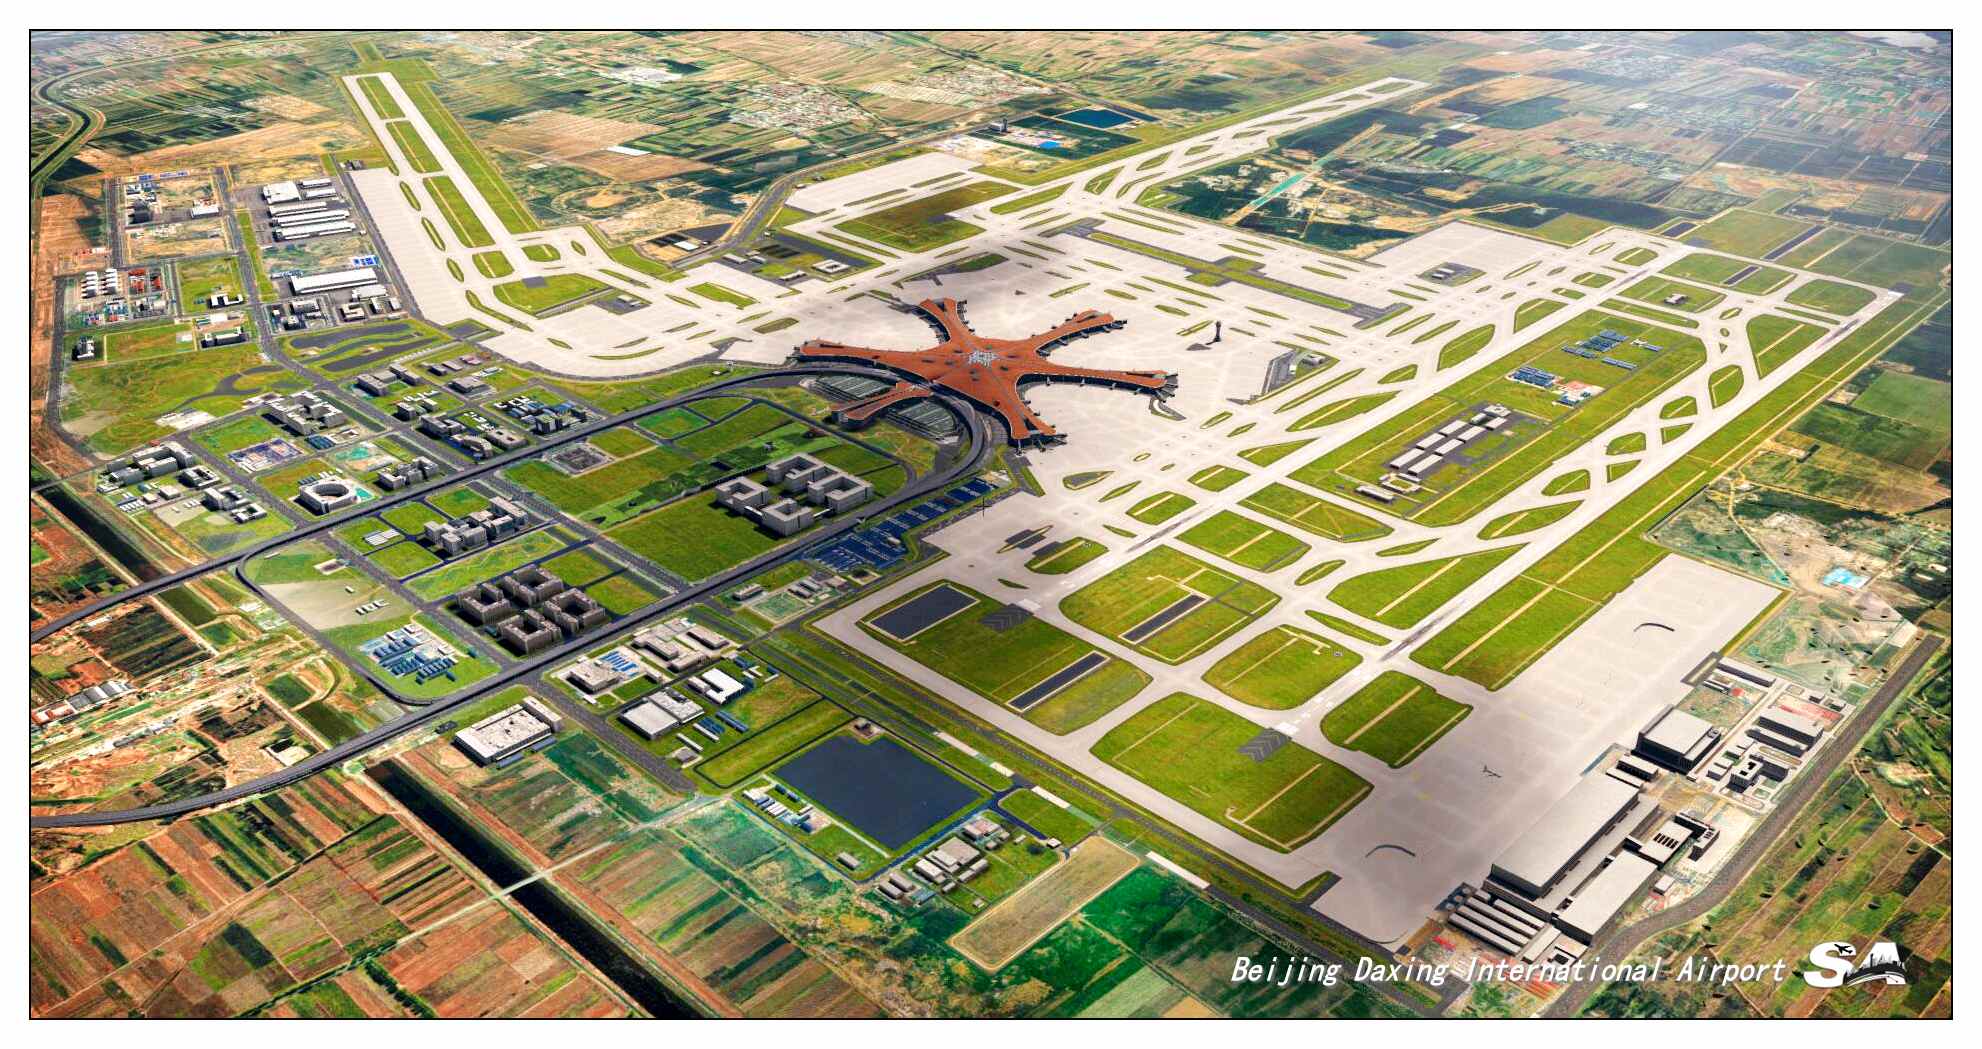 【X-Plane】ZBAD北京大兴国际机场-正式发布-873 